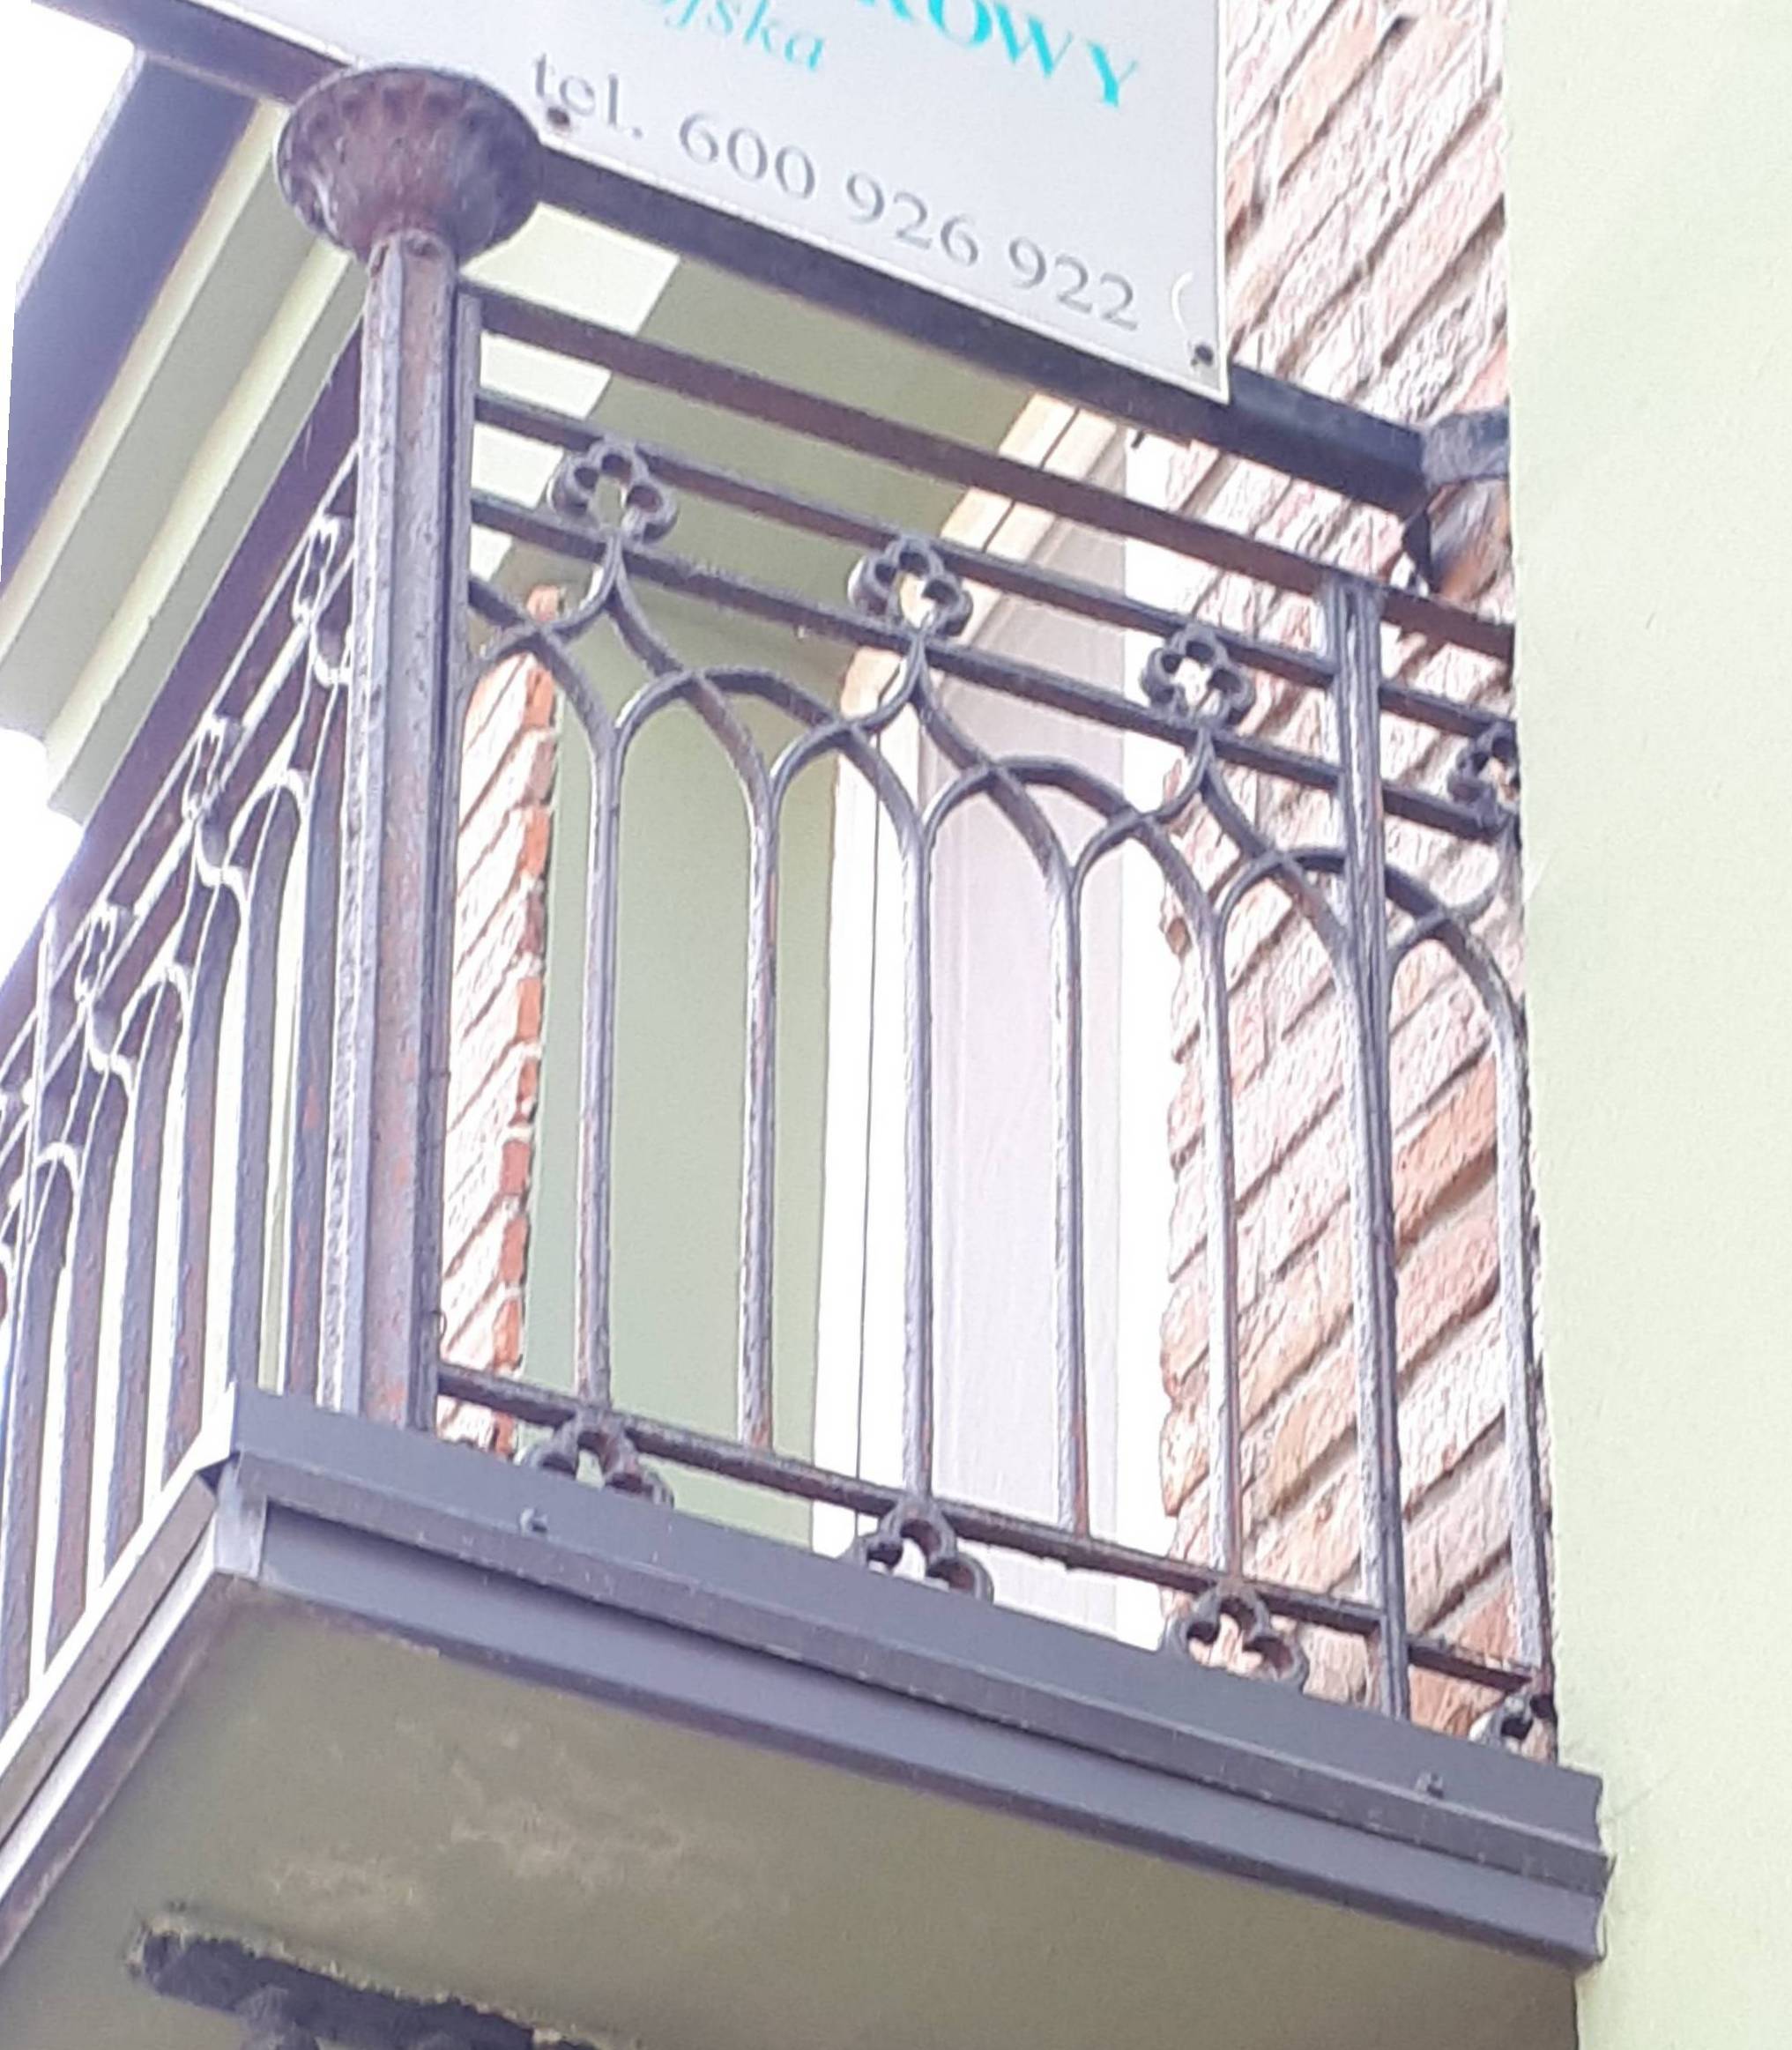 Elewacja frontowa. Lewy, wschodni balkon - balustrada. Fot. Robert Marcinkowski 2022 r., źródło: Res in Ornamento II.